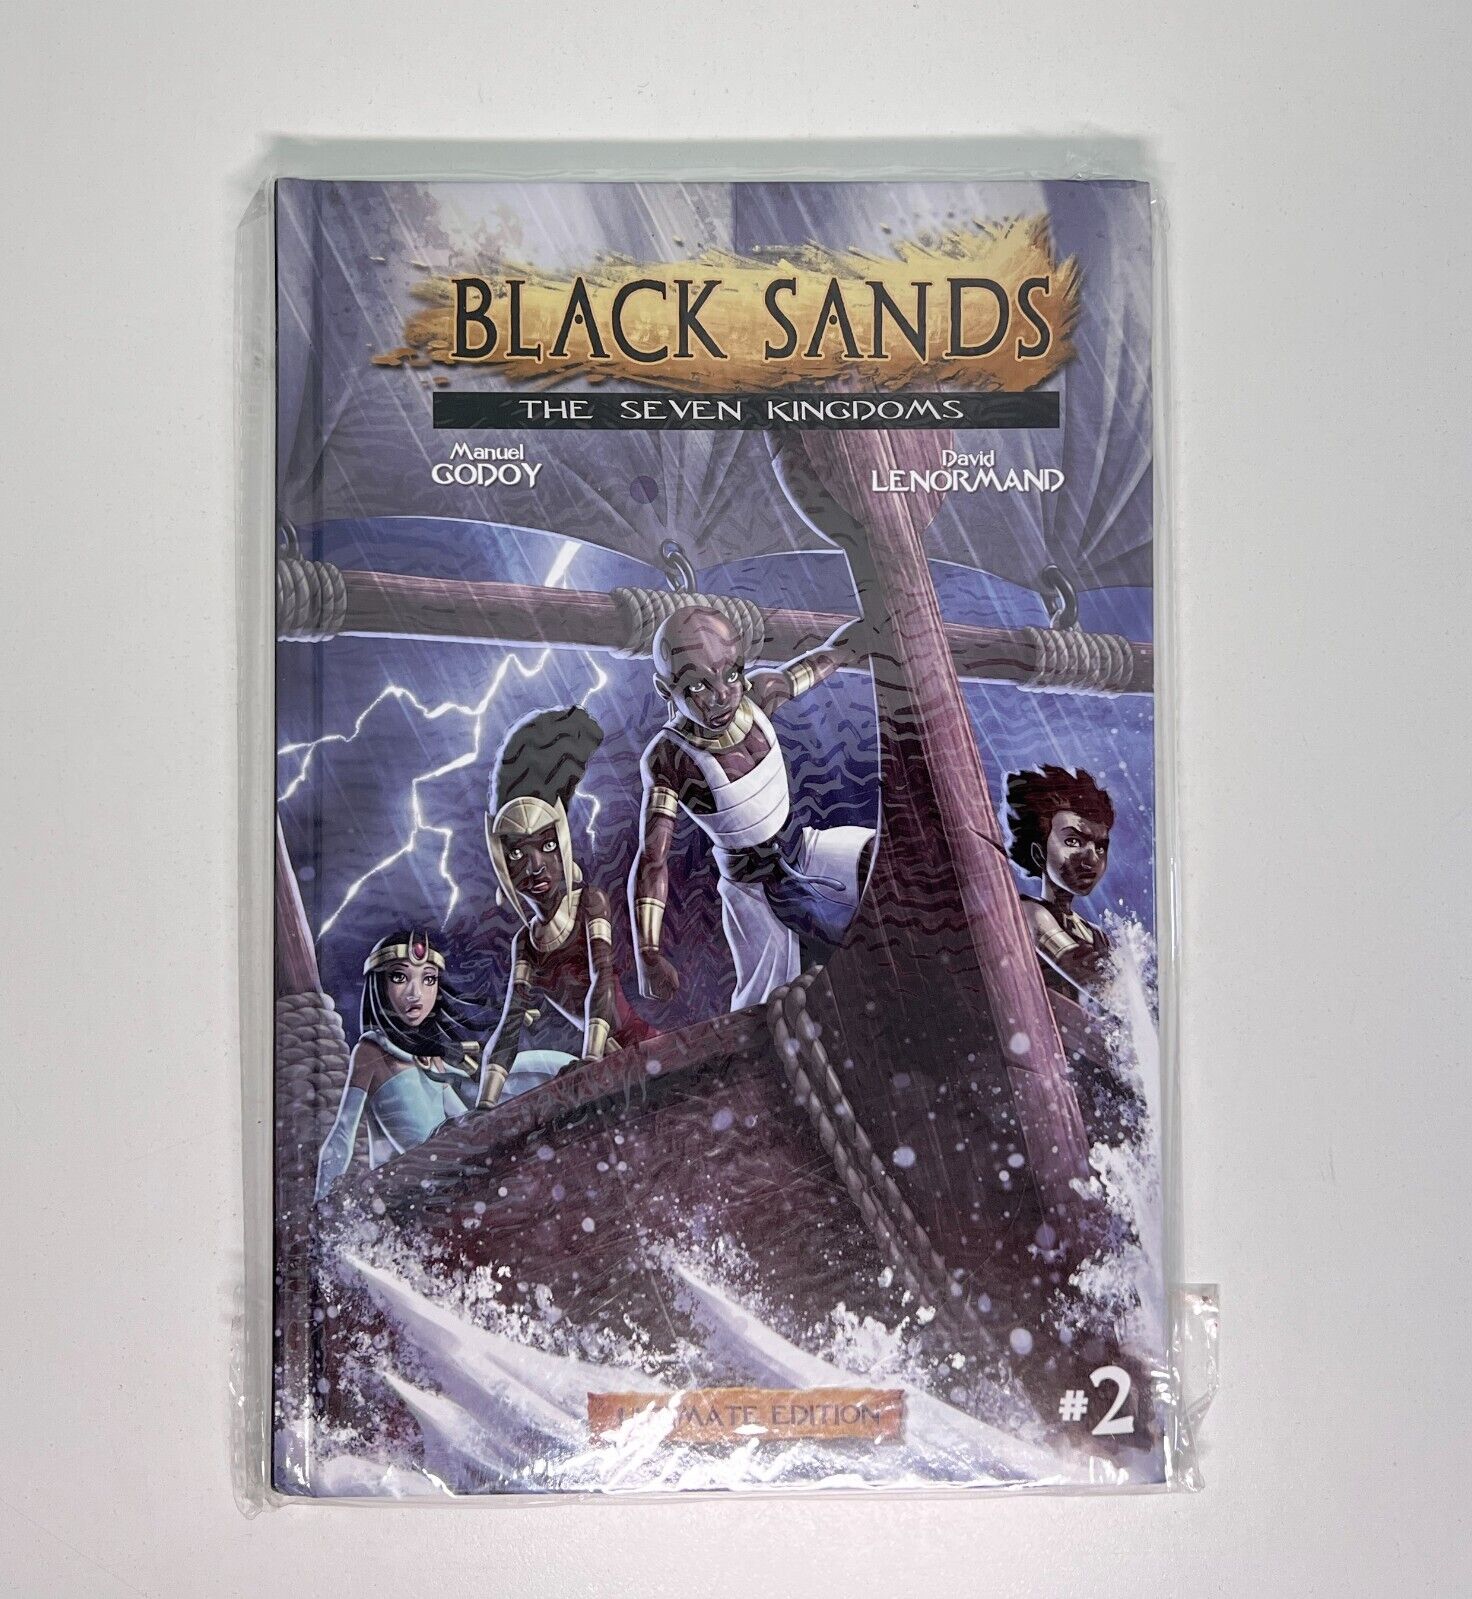 Black Sands, The Seven Kingdoms, Volume 2 by Manuel Godoy NEW #99A